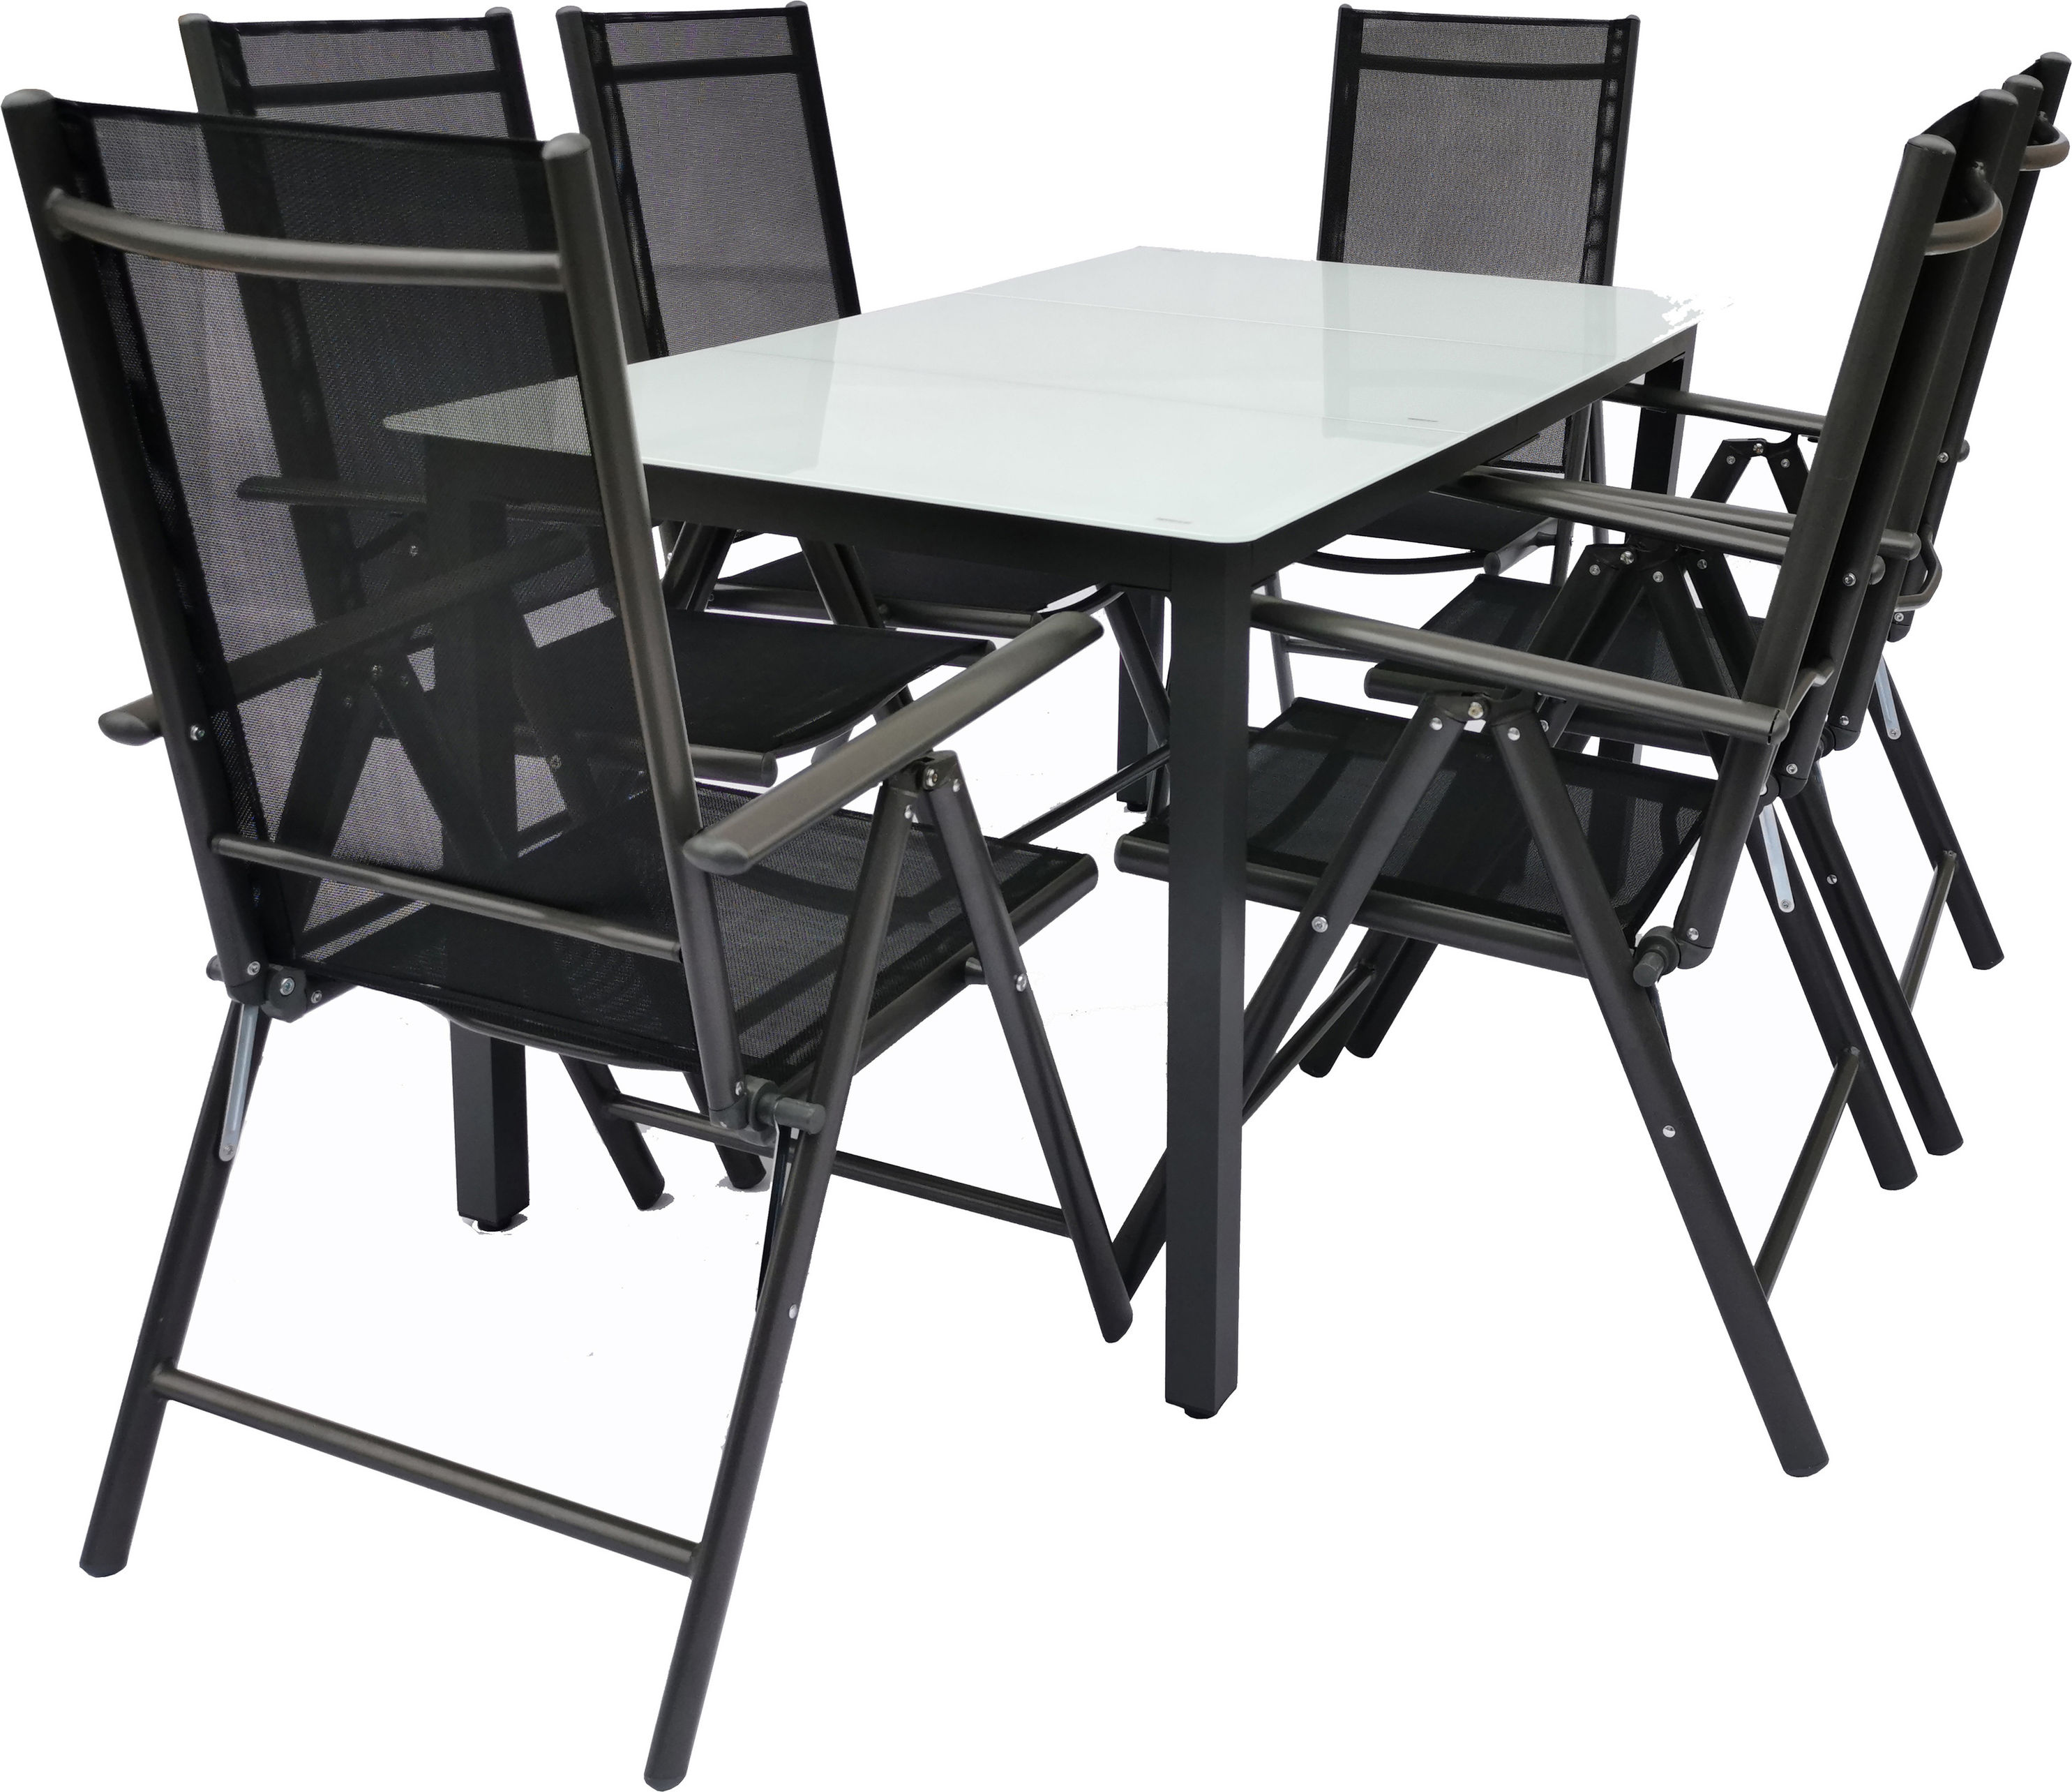 VCM Alu Gartenmöbel Sitzgruppe Set 140x80 Mattglas Farbe: Tisch + 6 Stühle:  Anthrazit | Weltbild.de